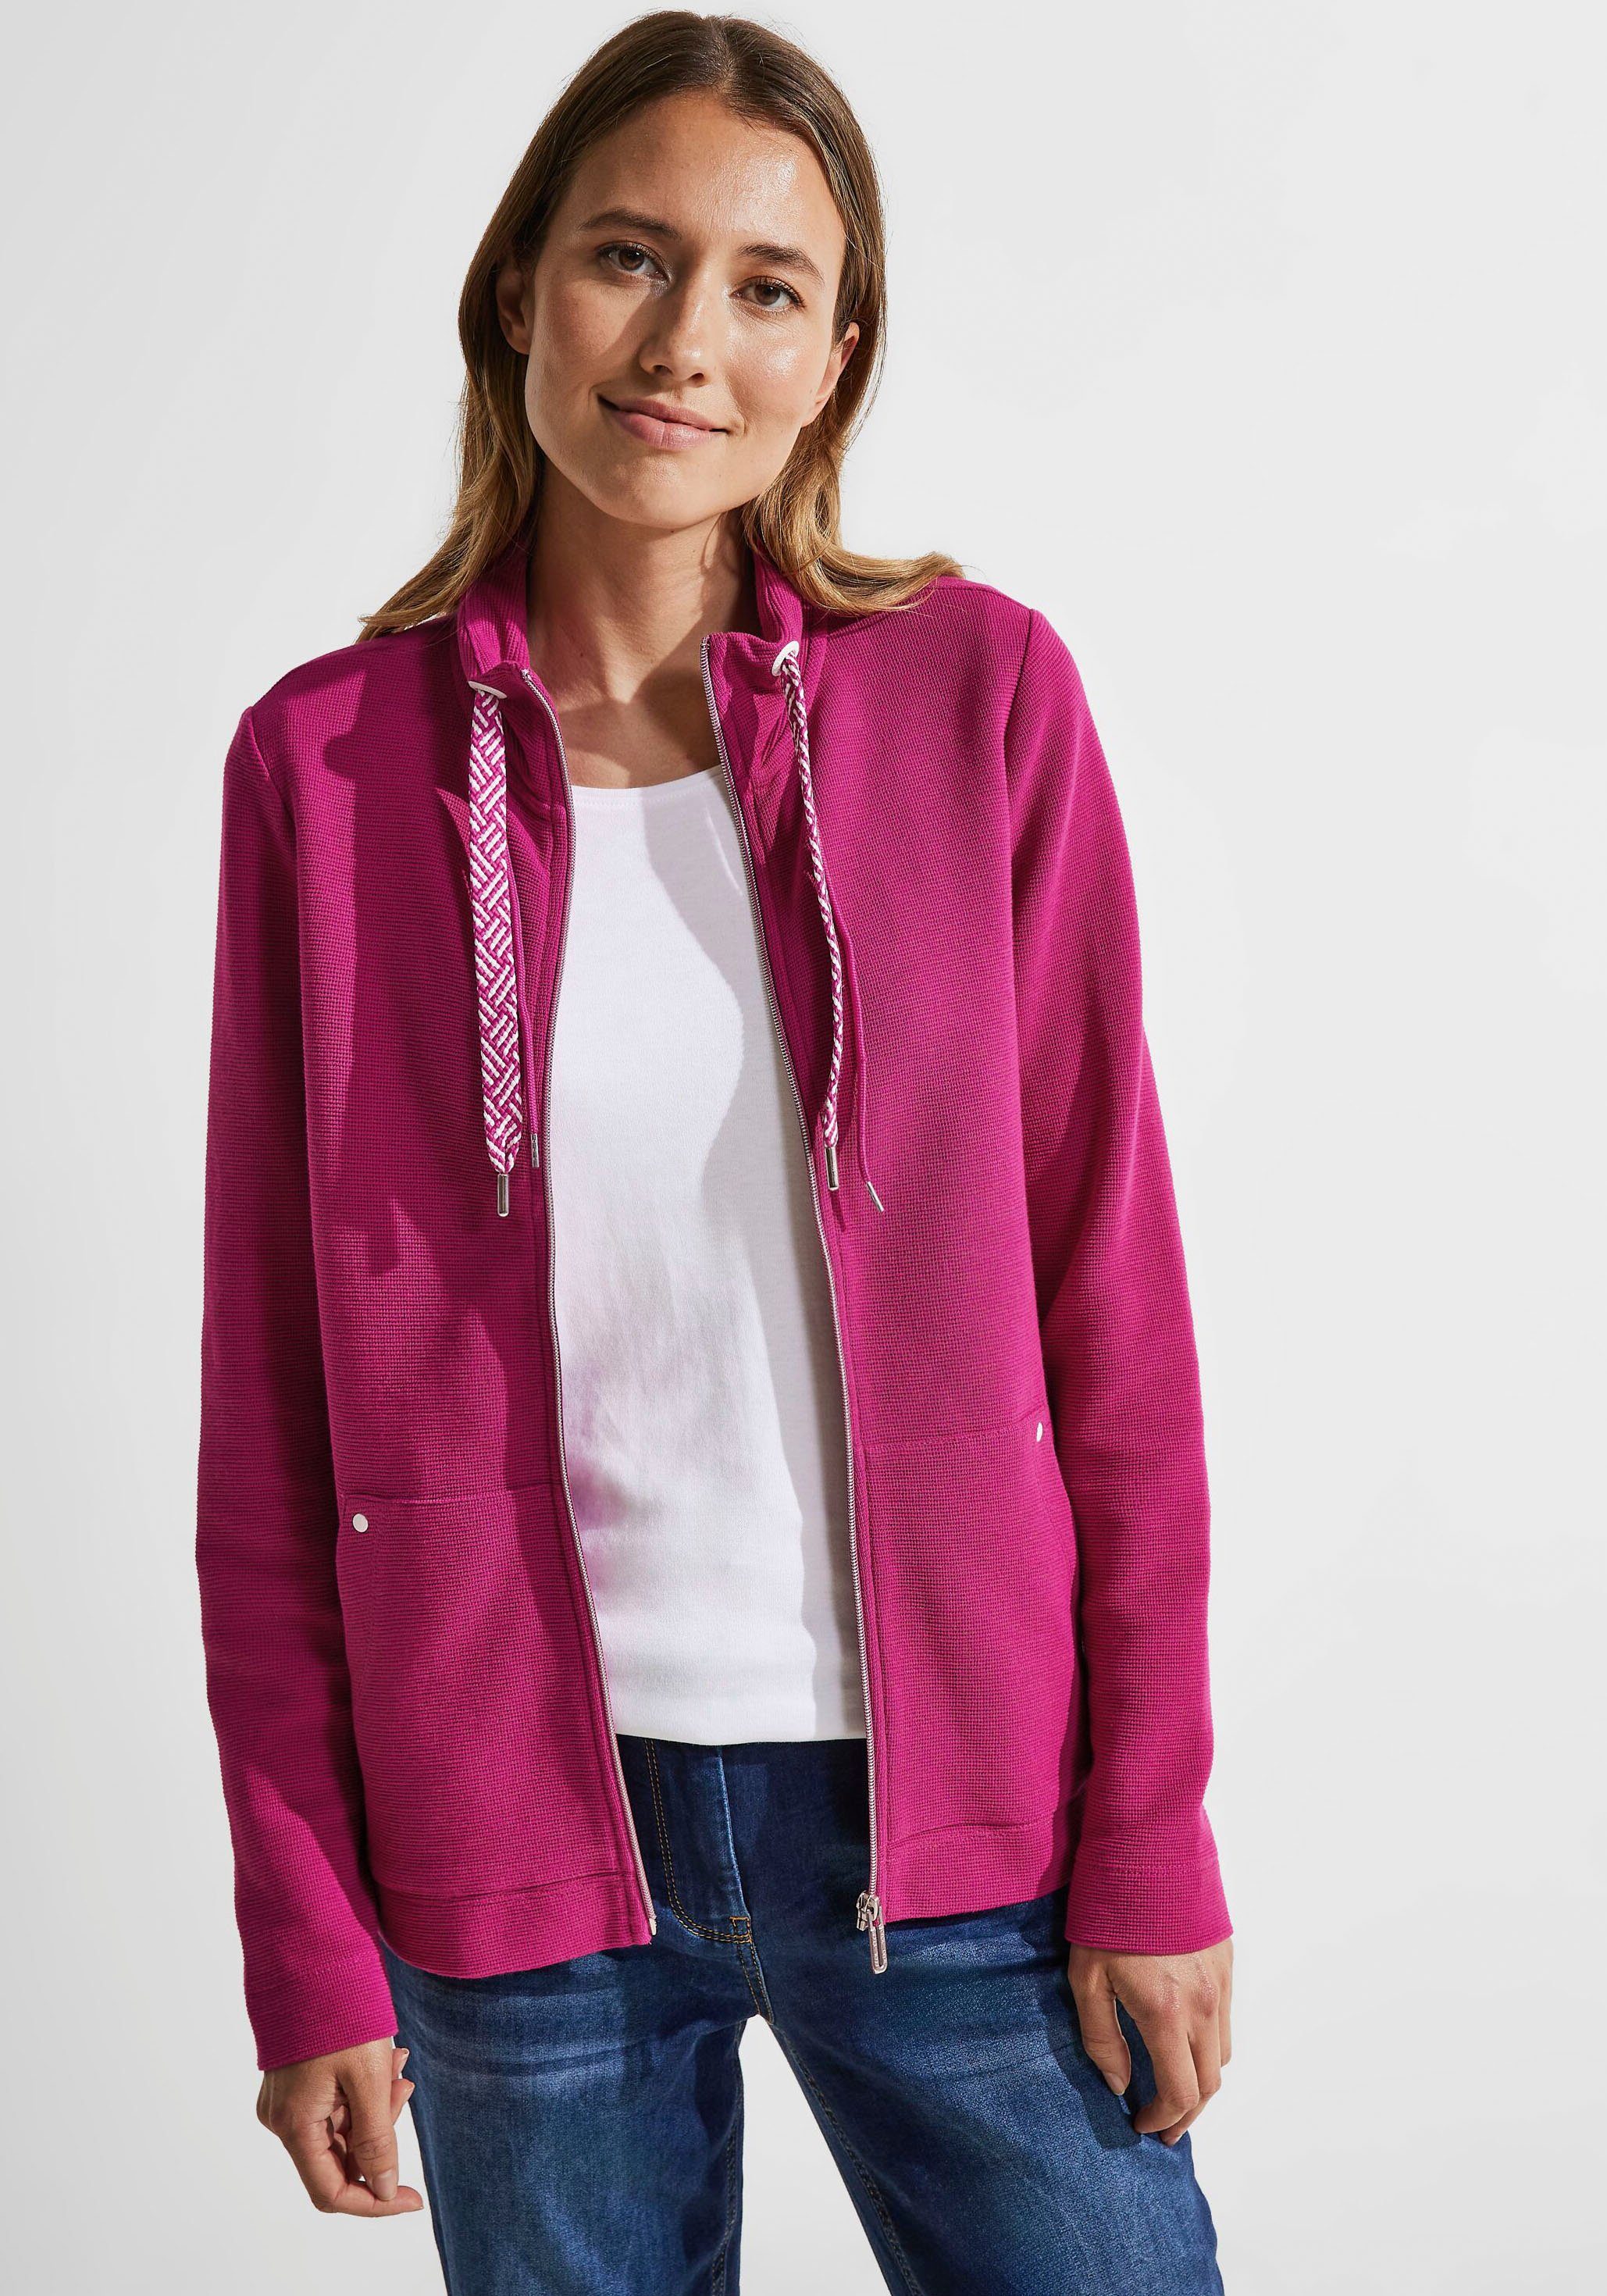 Rosa Cecil Jacken für Damen kaufen » Pinke Cecil Jacken | OTTO